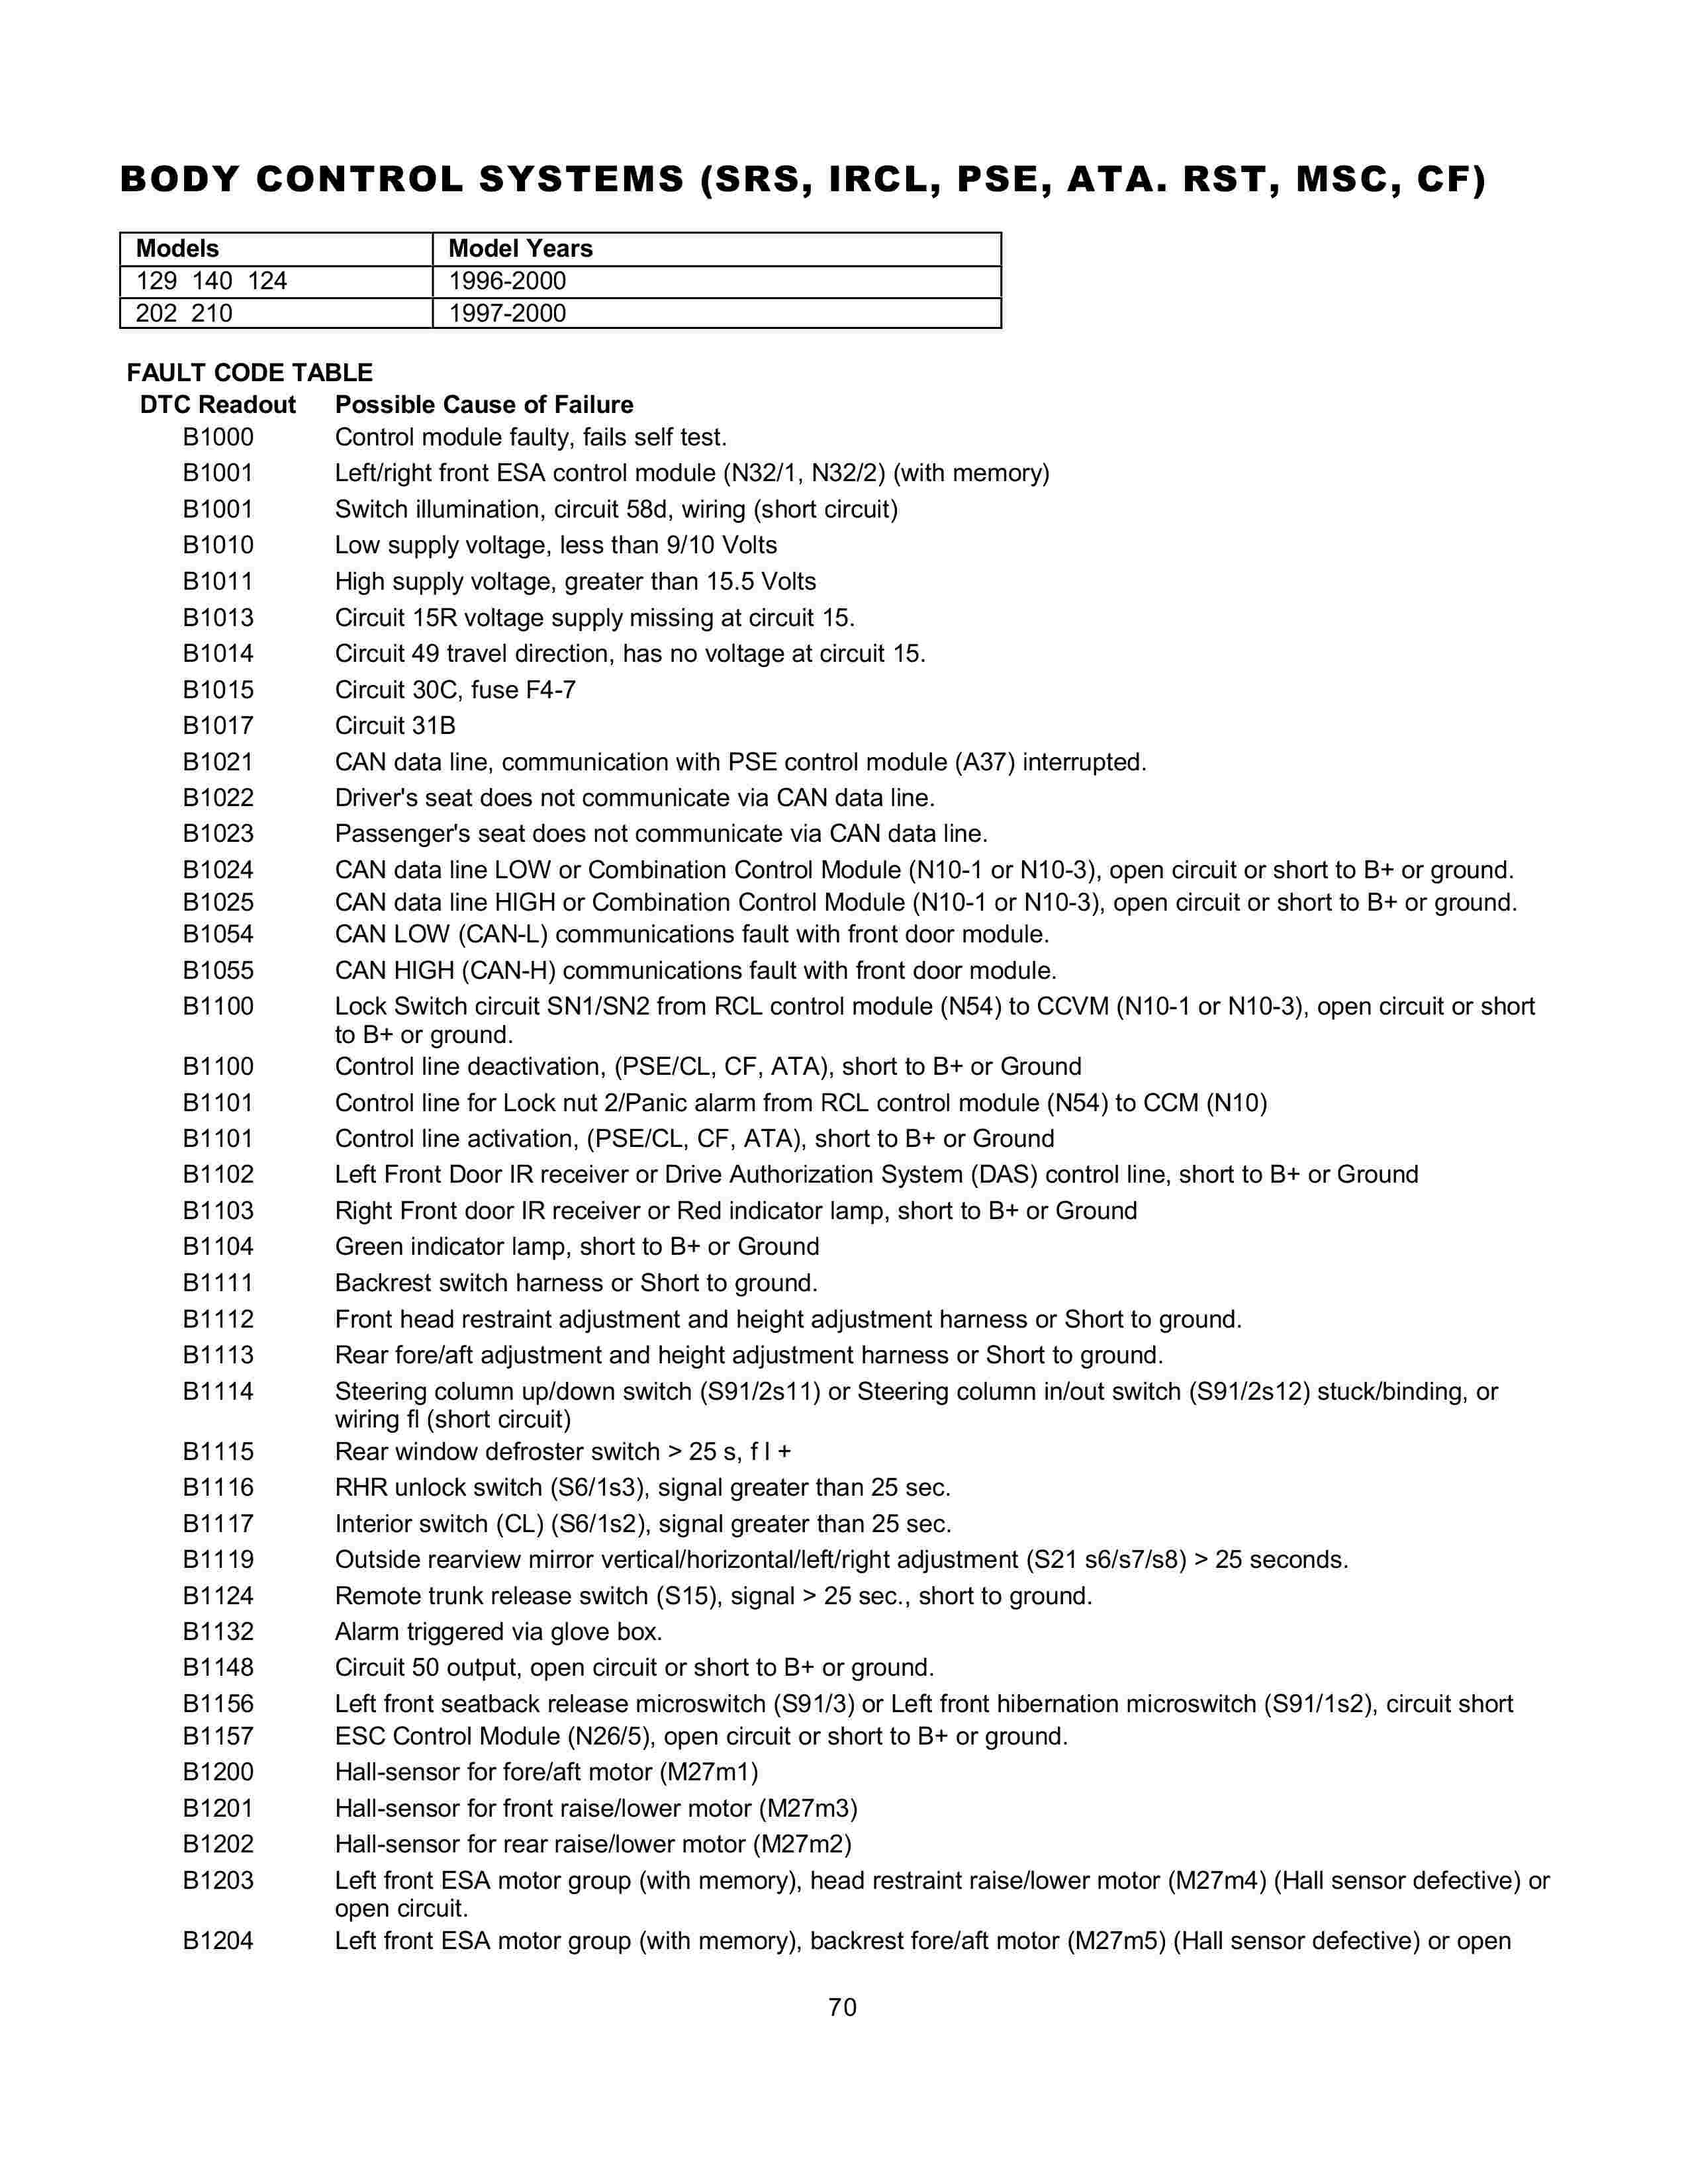 Lista de Códigos de falhas (fault codes) Mercedes-Benz 007012